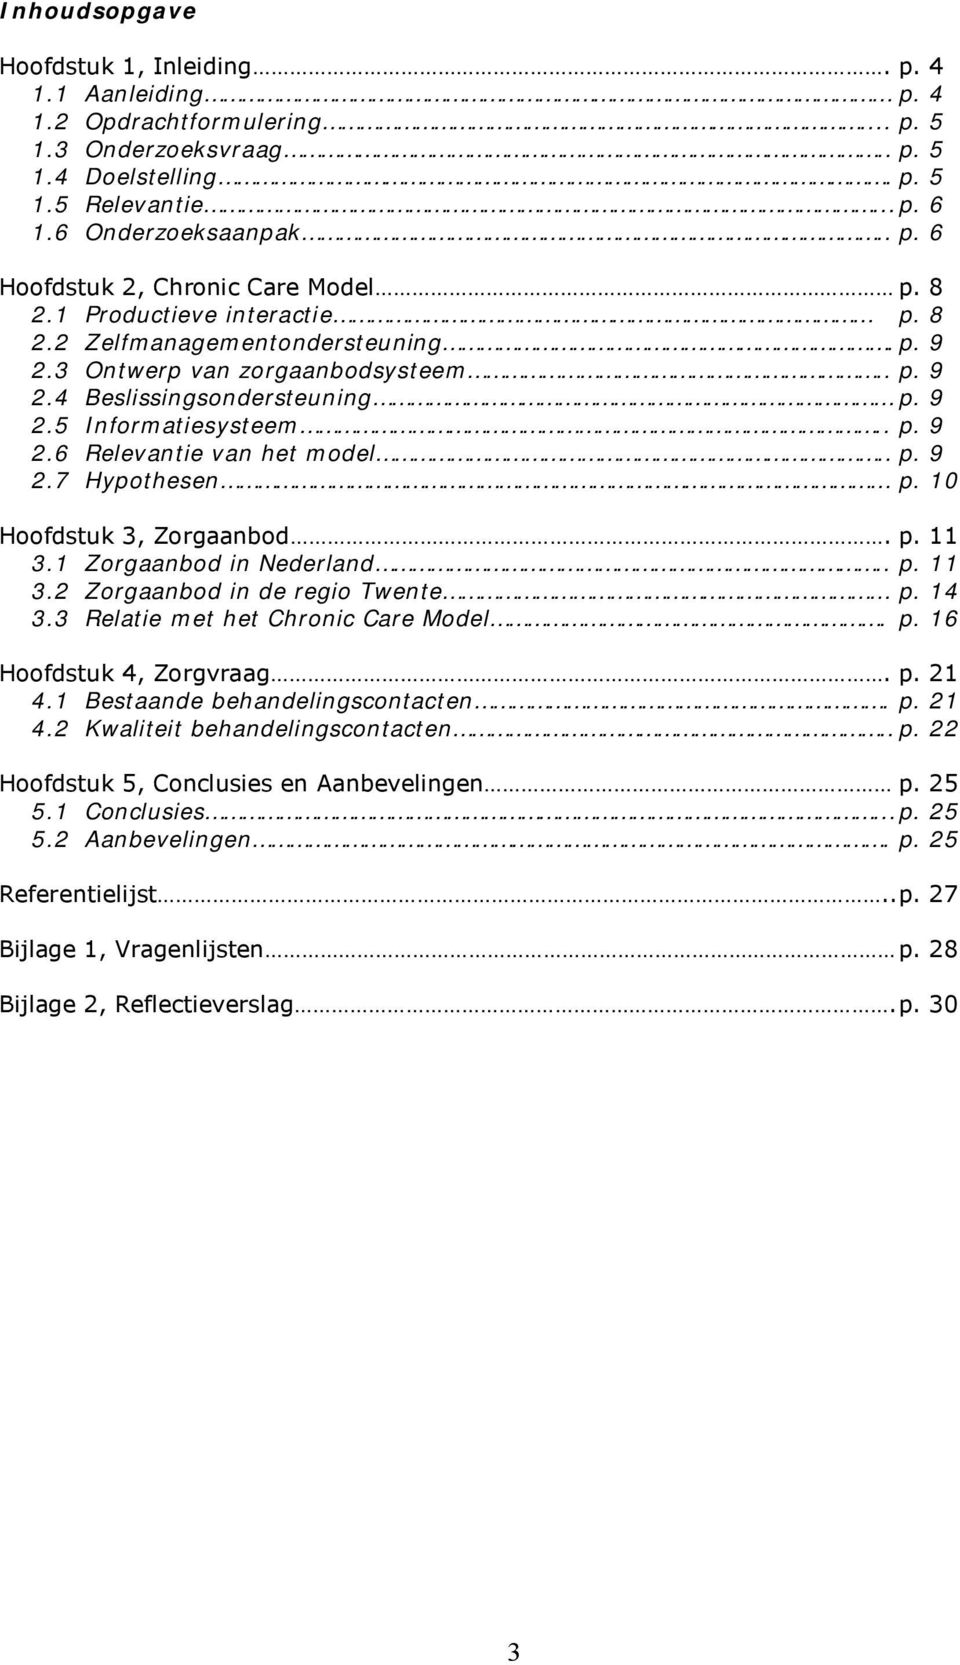 . p. 9 2.7 Hypothesen p. 10 Hoofdstuk 3, Zorgaanbod. p. 11 3.1 Zorgaanbod in Nederland.. p. 11 3.2 Zorgaanbod in de regio Twente p. 14 3.3 Relatie met het Chronic Care Model. p. 16 Hoofdstuk 4, Zorgvraag.